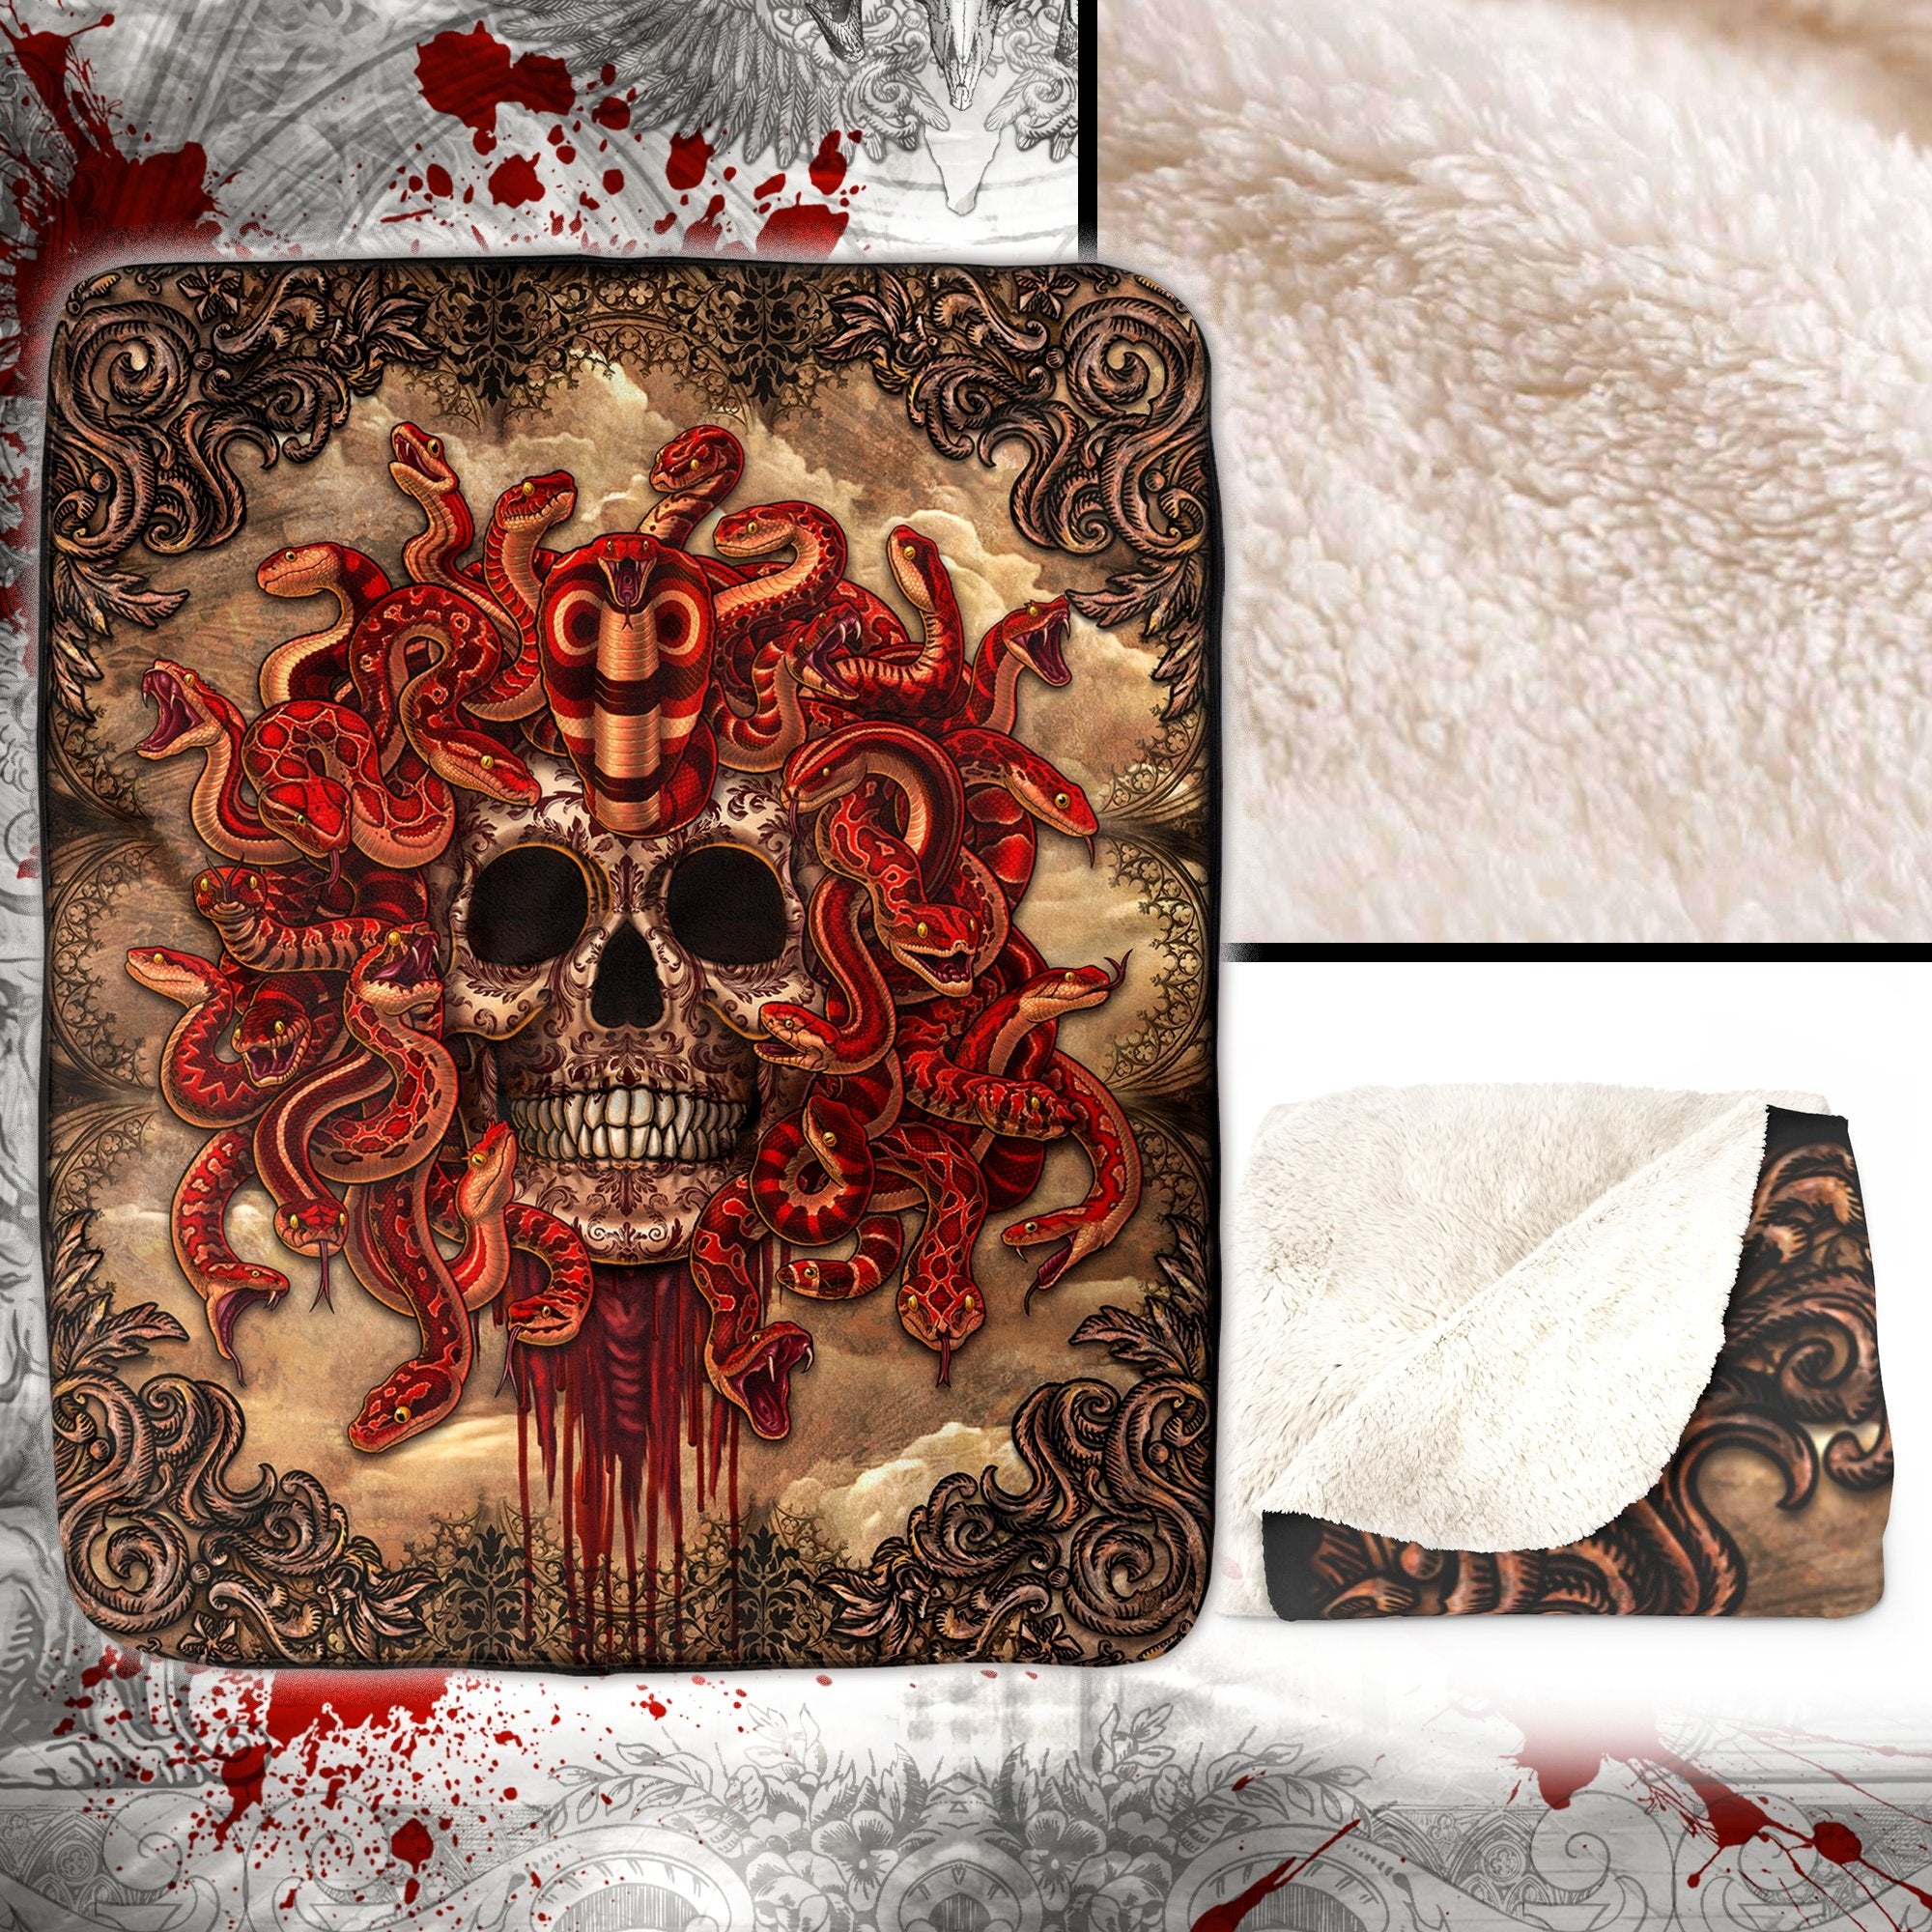 Skull Throw Fleece Blanket, Gothic Horror Home Decor, Alternative Art Gift - Medusa, Beige & Red Snakes - Abysm Internal